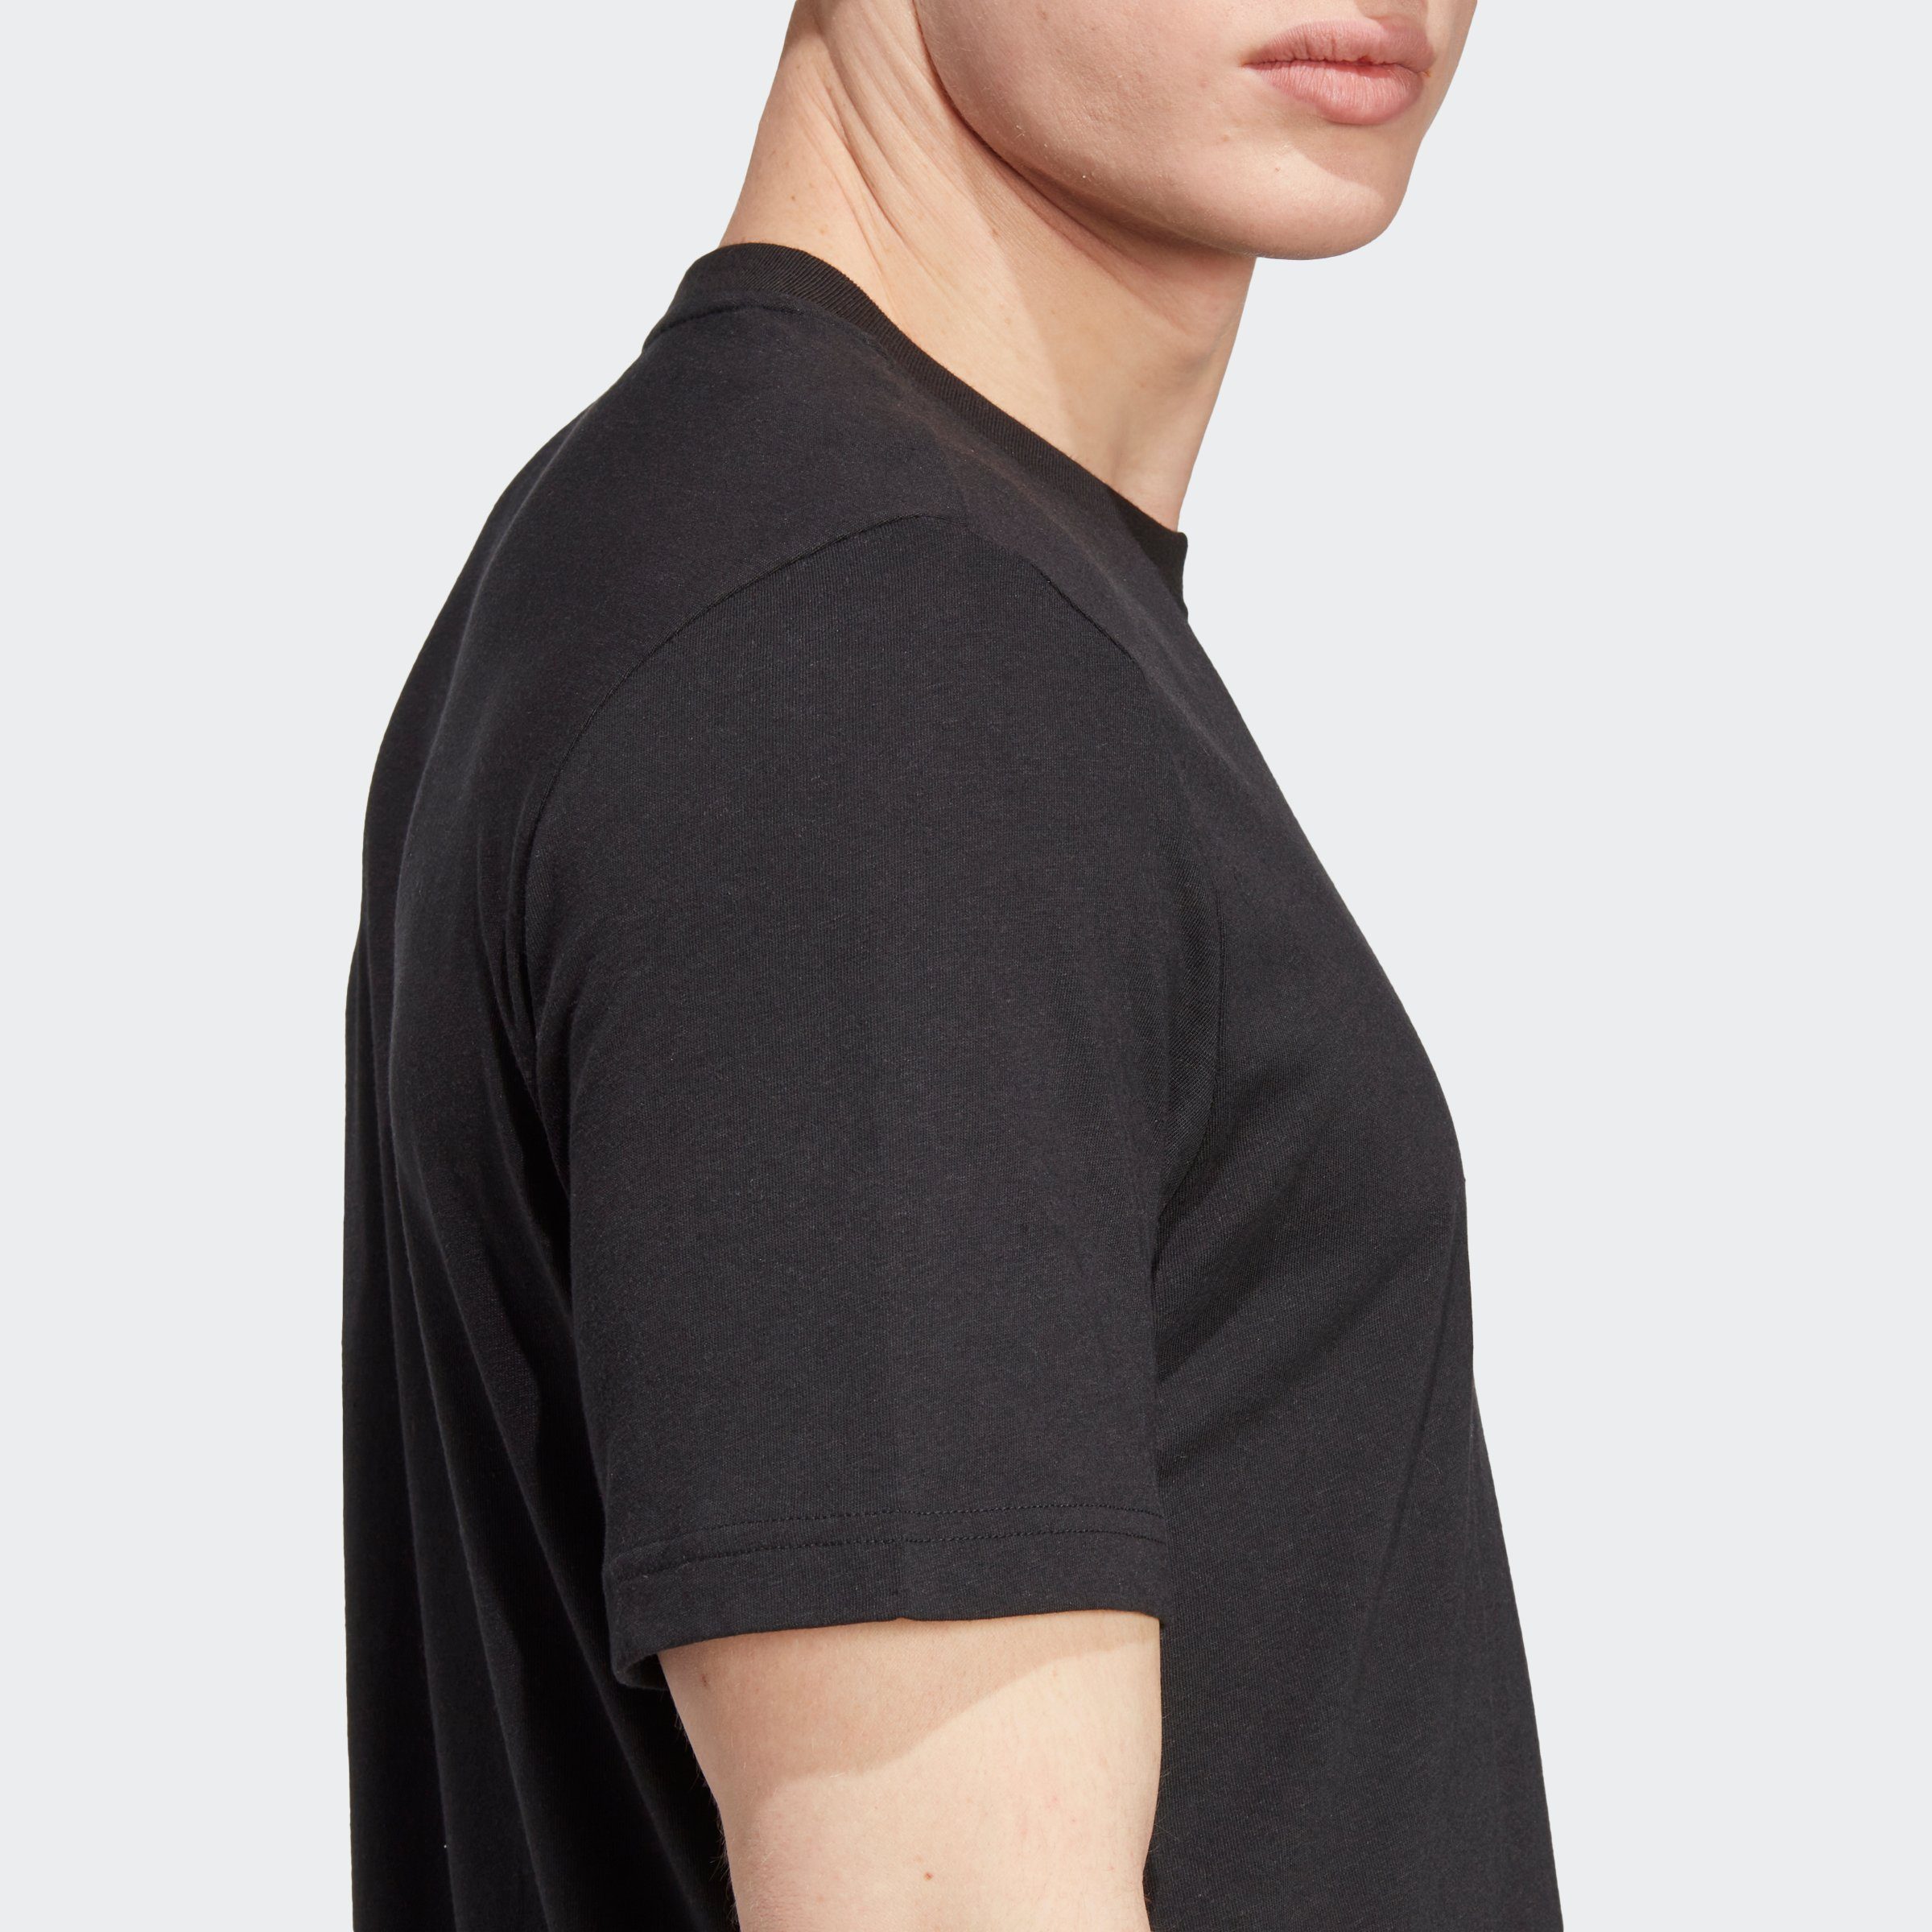 ESSENTIALS+ adidas HEMP T-Shirt Black WITH Originals MADE